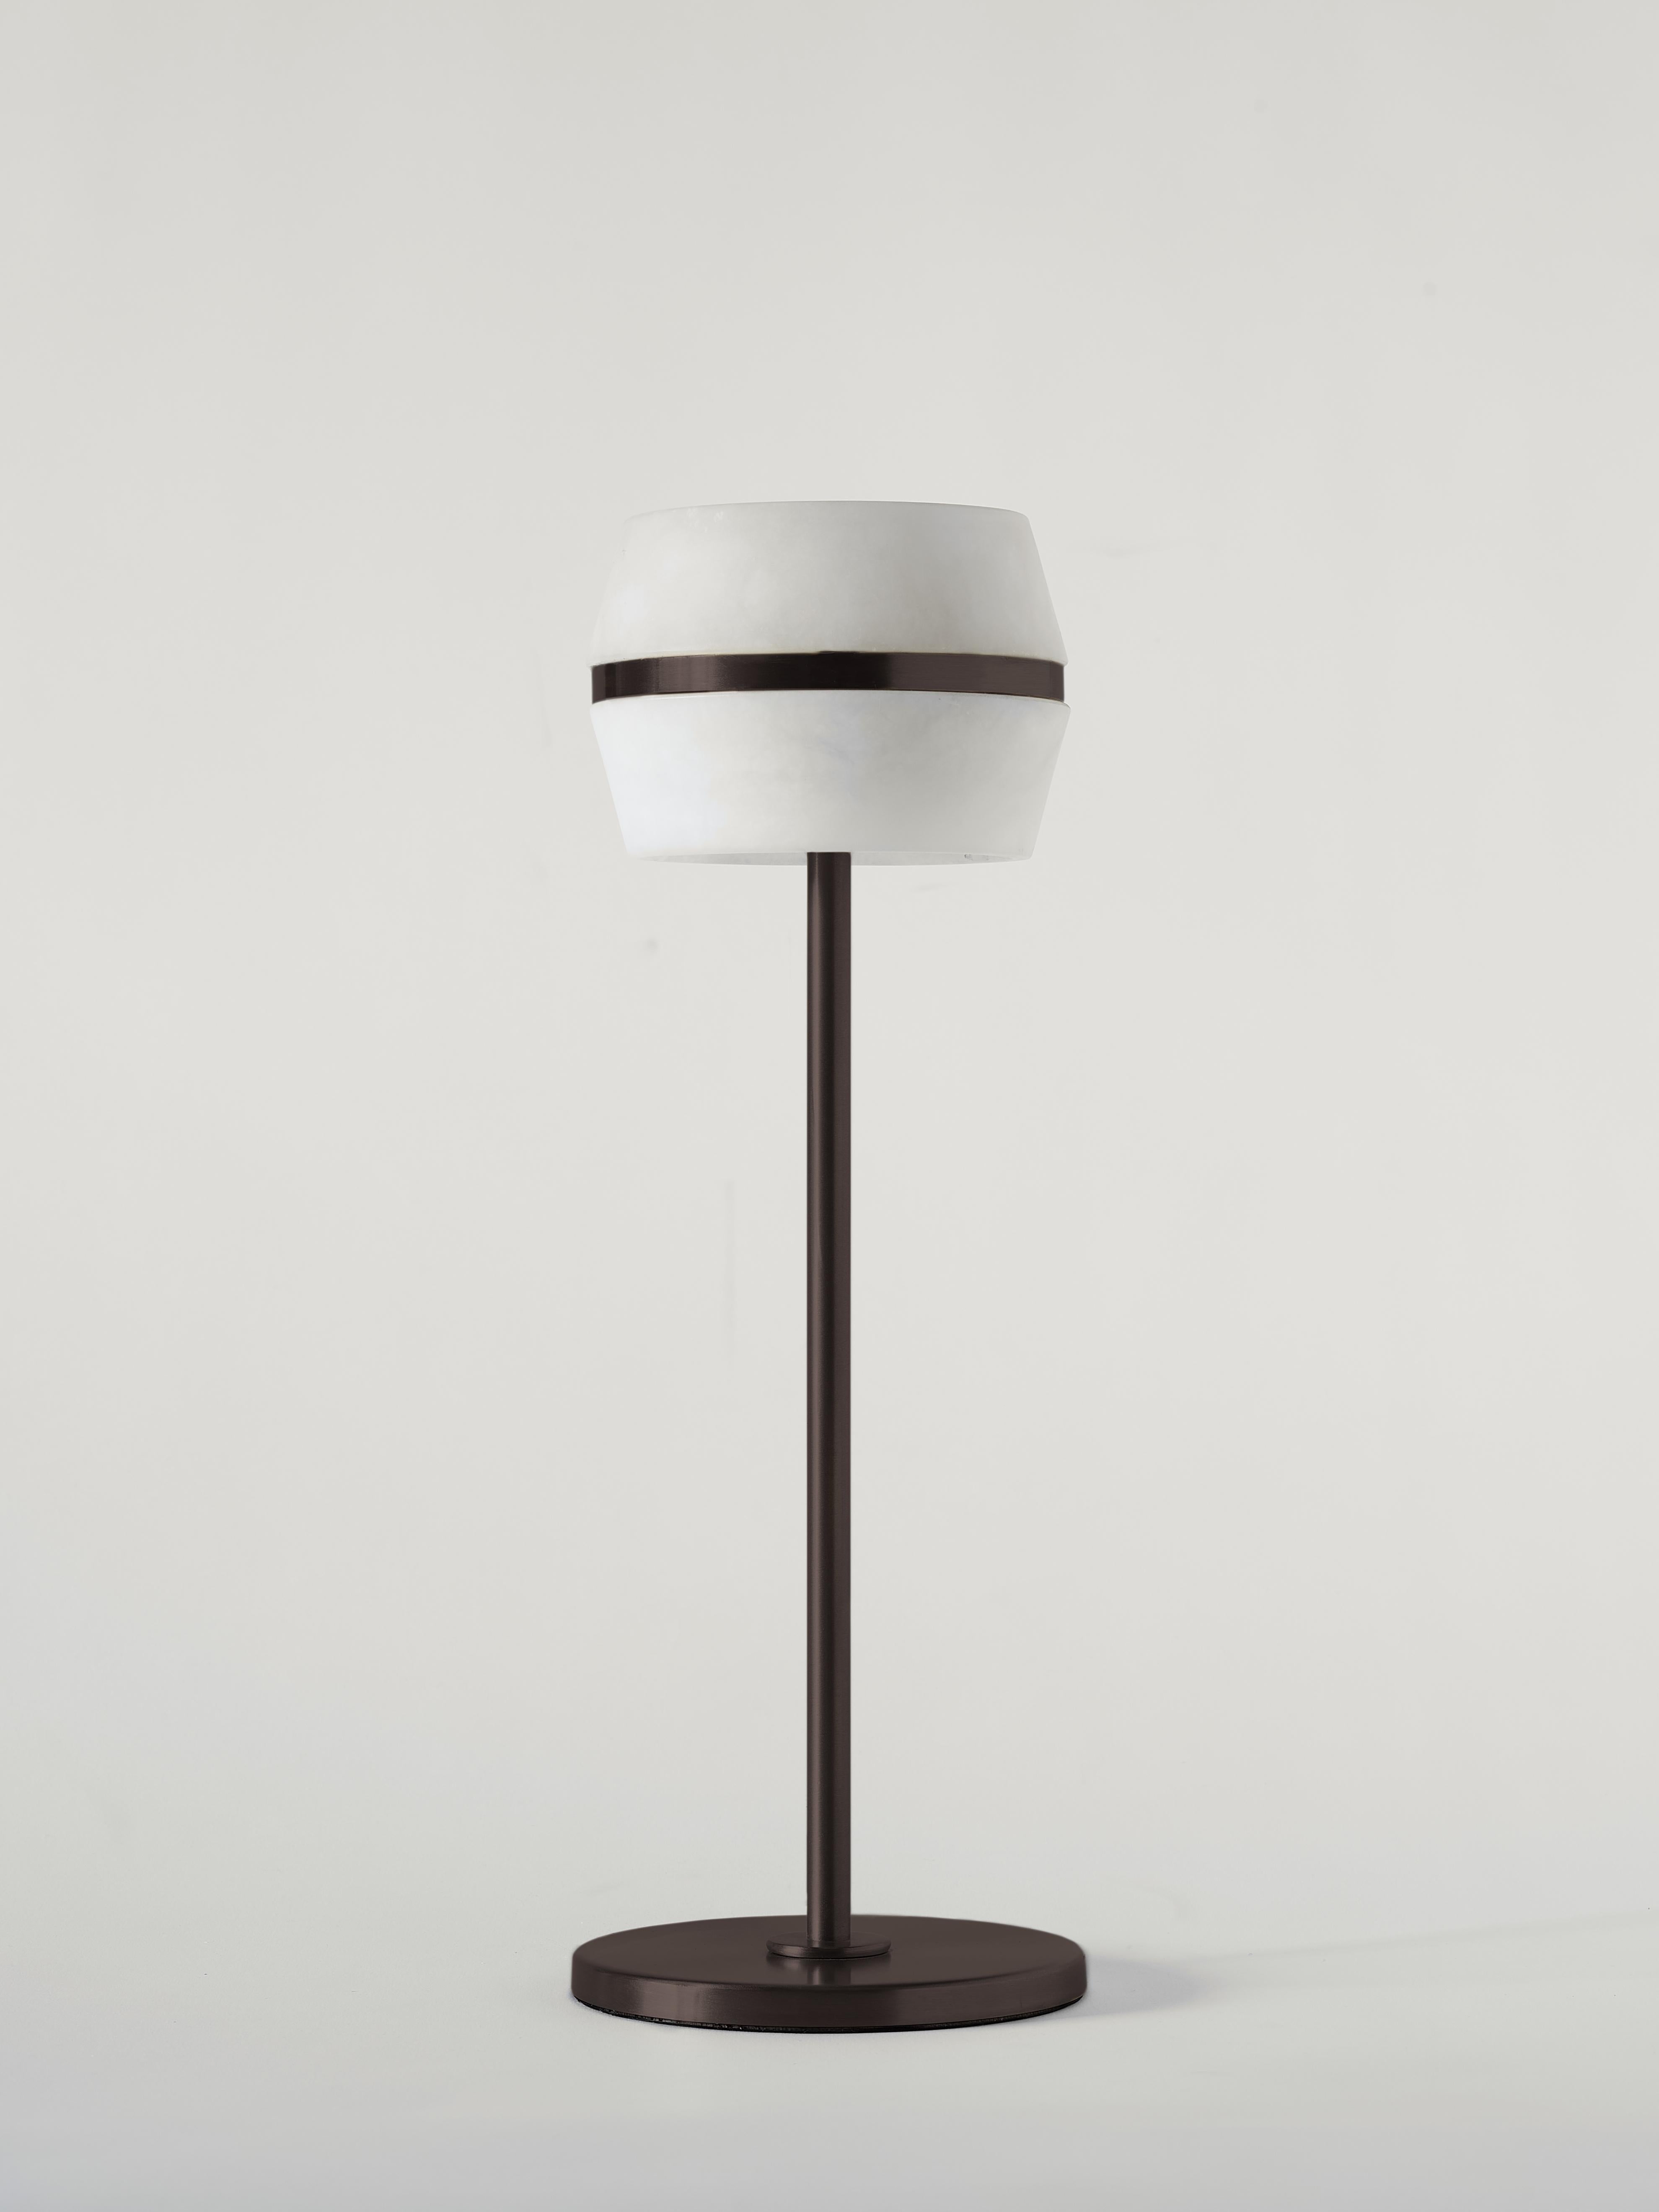 La lampe de table sans fil Tommy de MATLIGHT Milano est une lampe à DEL polyvalente et fonctionnelle conçue pour être utilisée sur une table, que ce soit dans un cadre résidentiel ou commercial. Ses caractéristiques comprennent un capteur tactile et